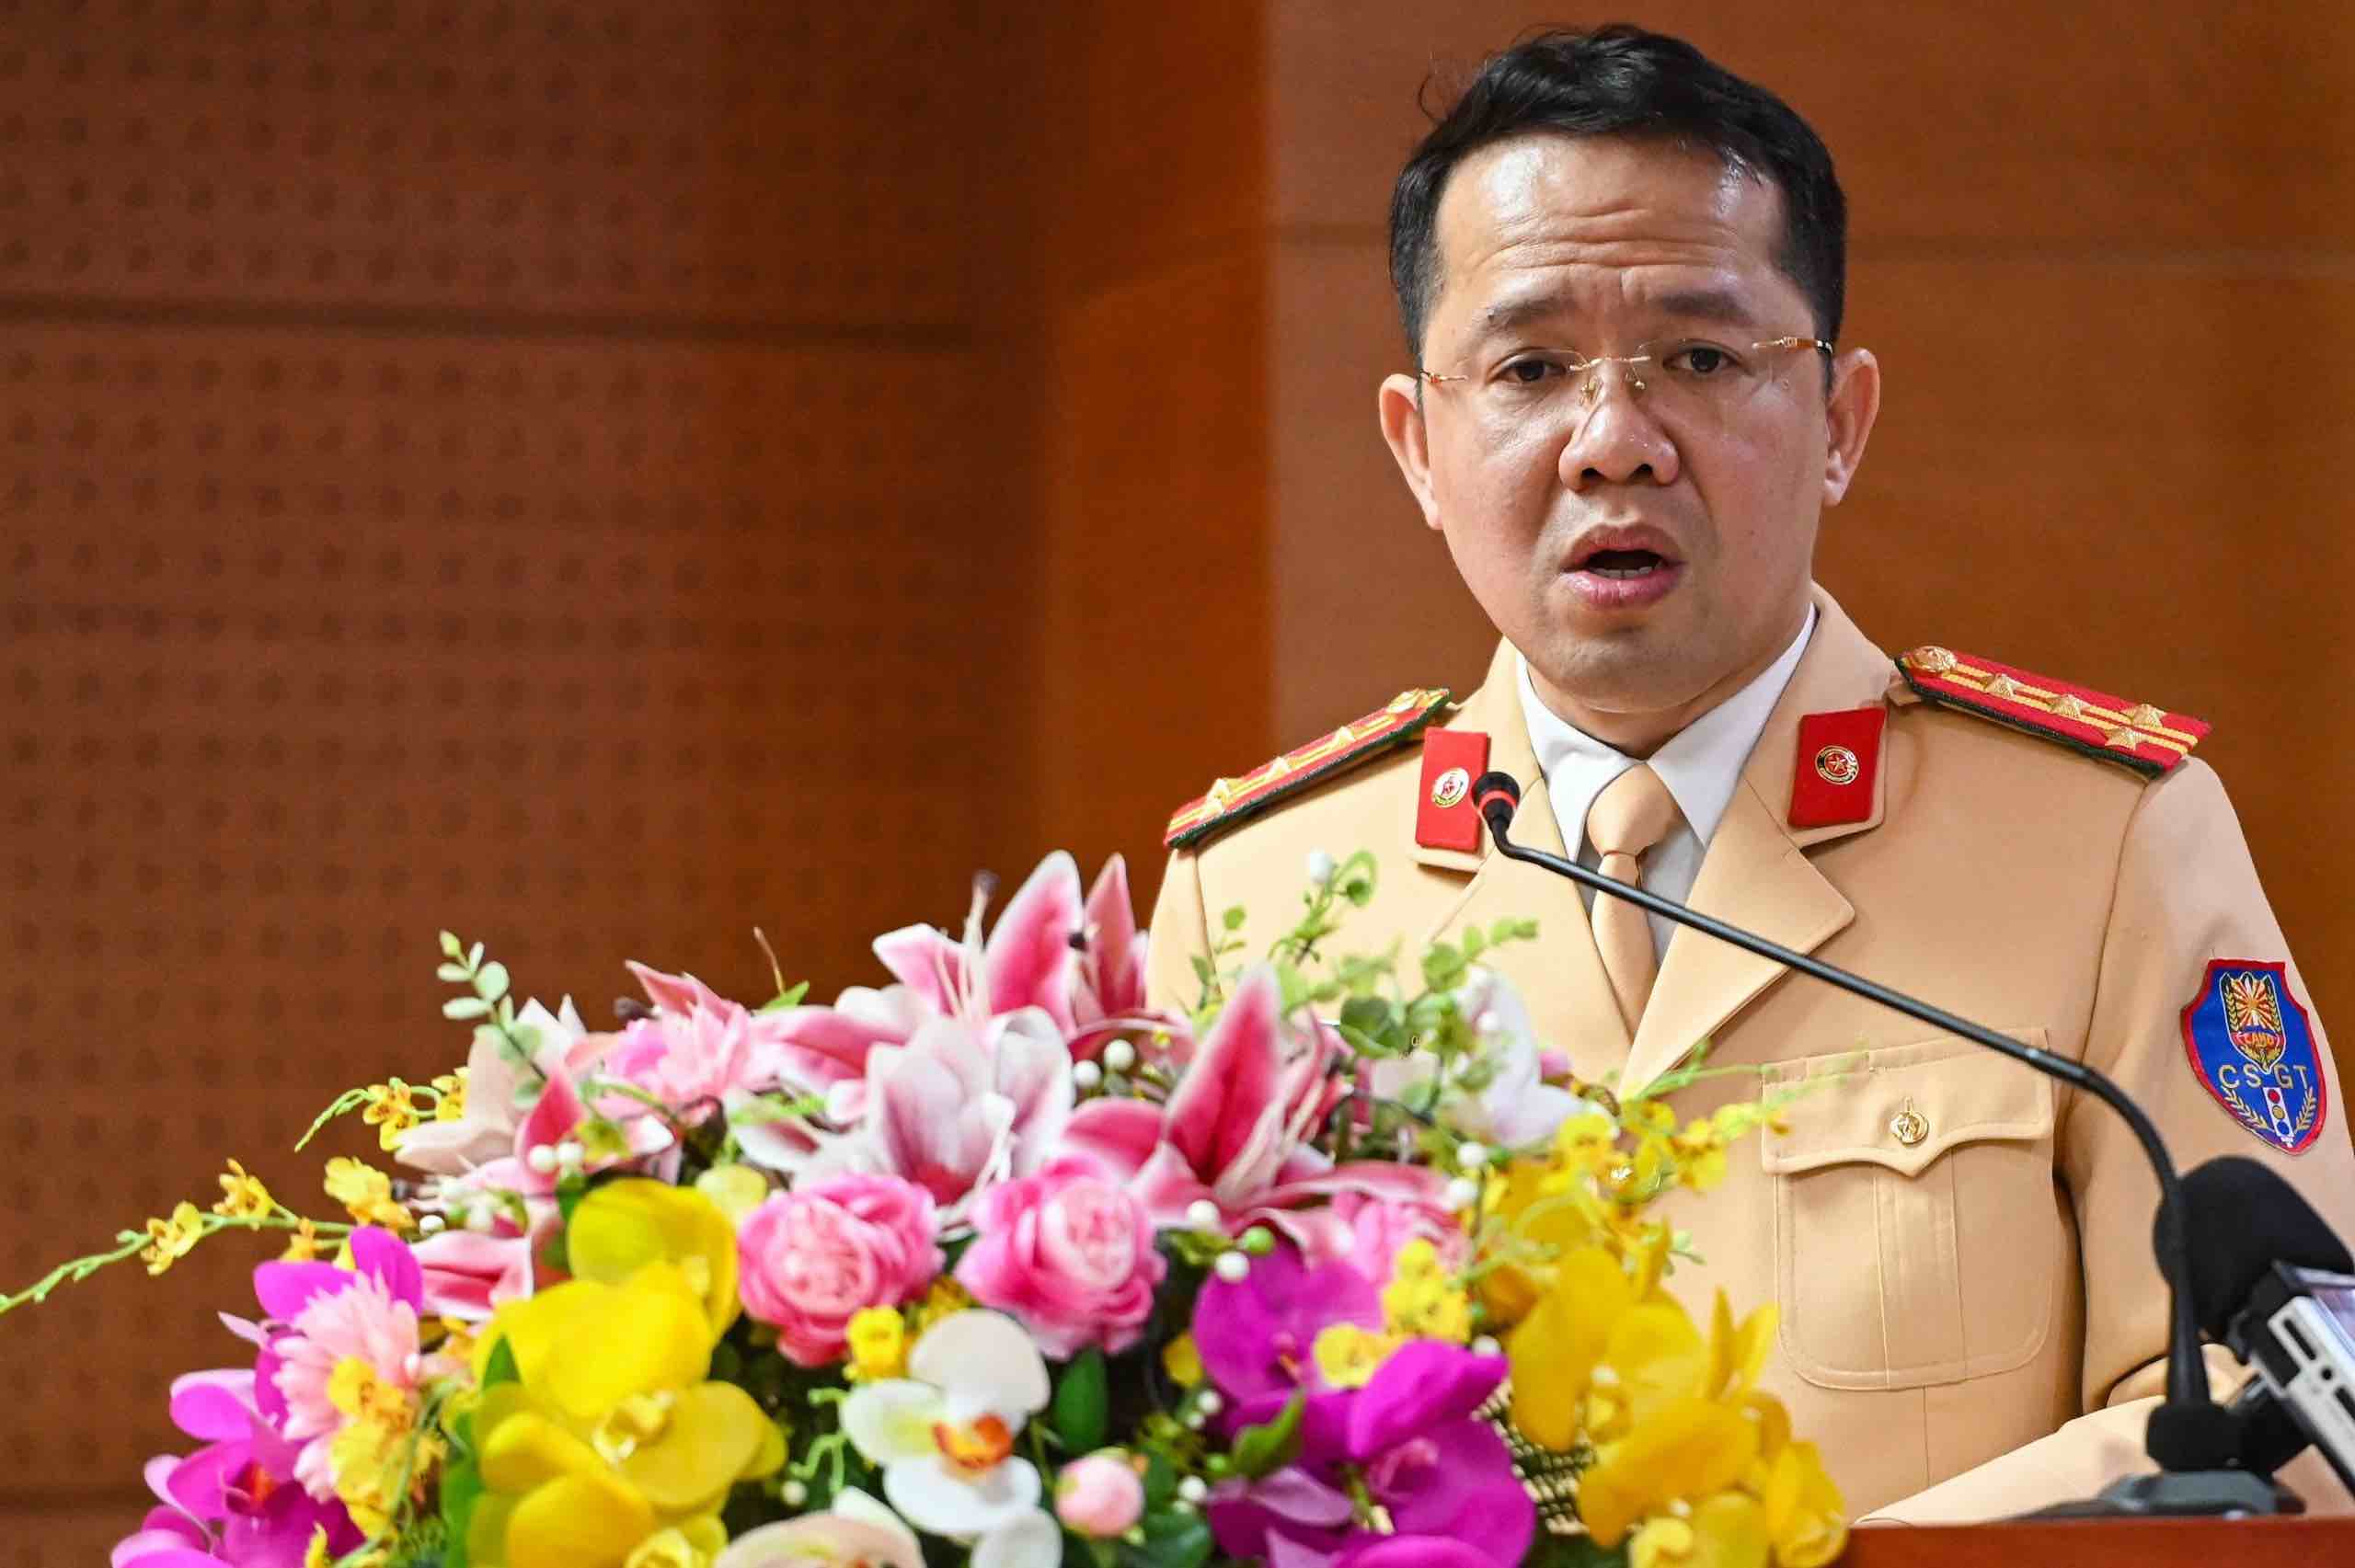 Đại tá Nguyễn Quang Nhật - Trưởng phòng 3, Cục CSGT, Bộ Công an. Ảnh: Cục CSGT